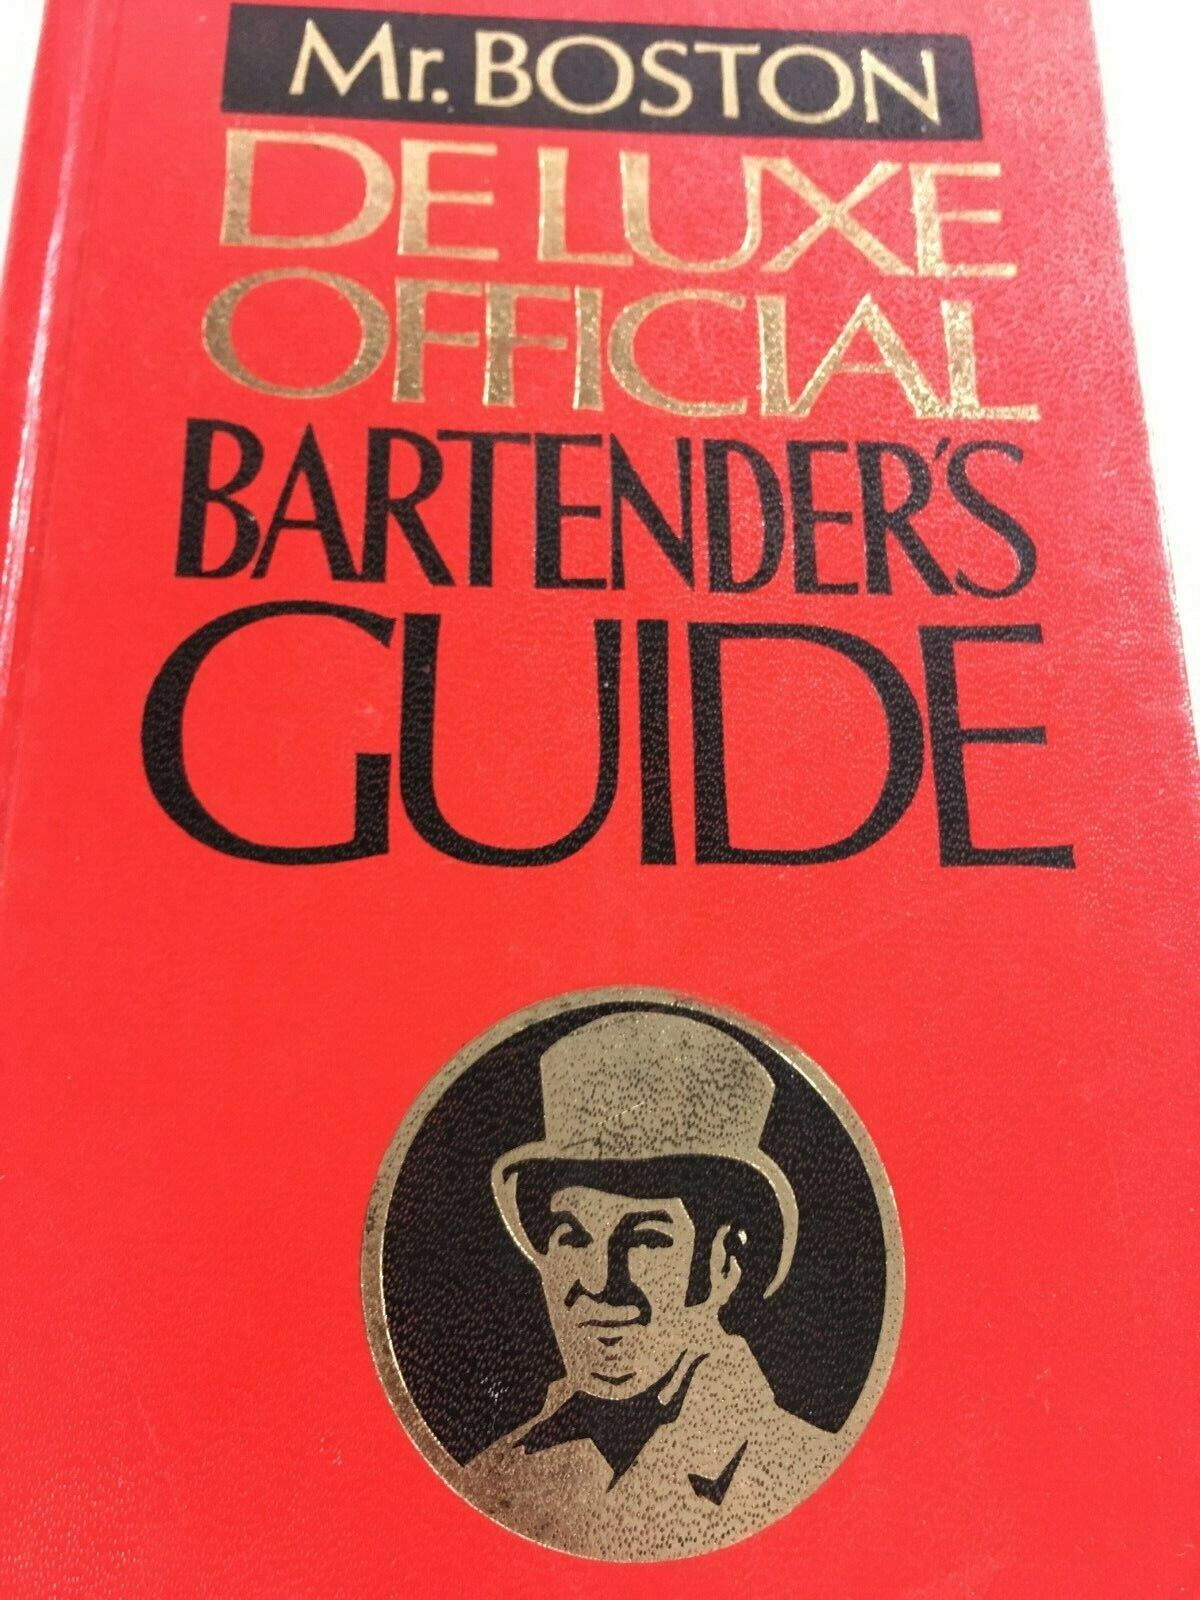 Mr. Boston Deluxe Official Bartender’s Guide, 1976